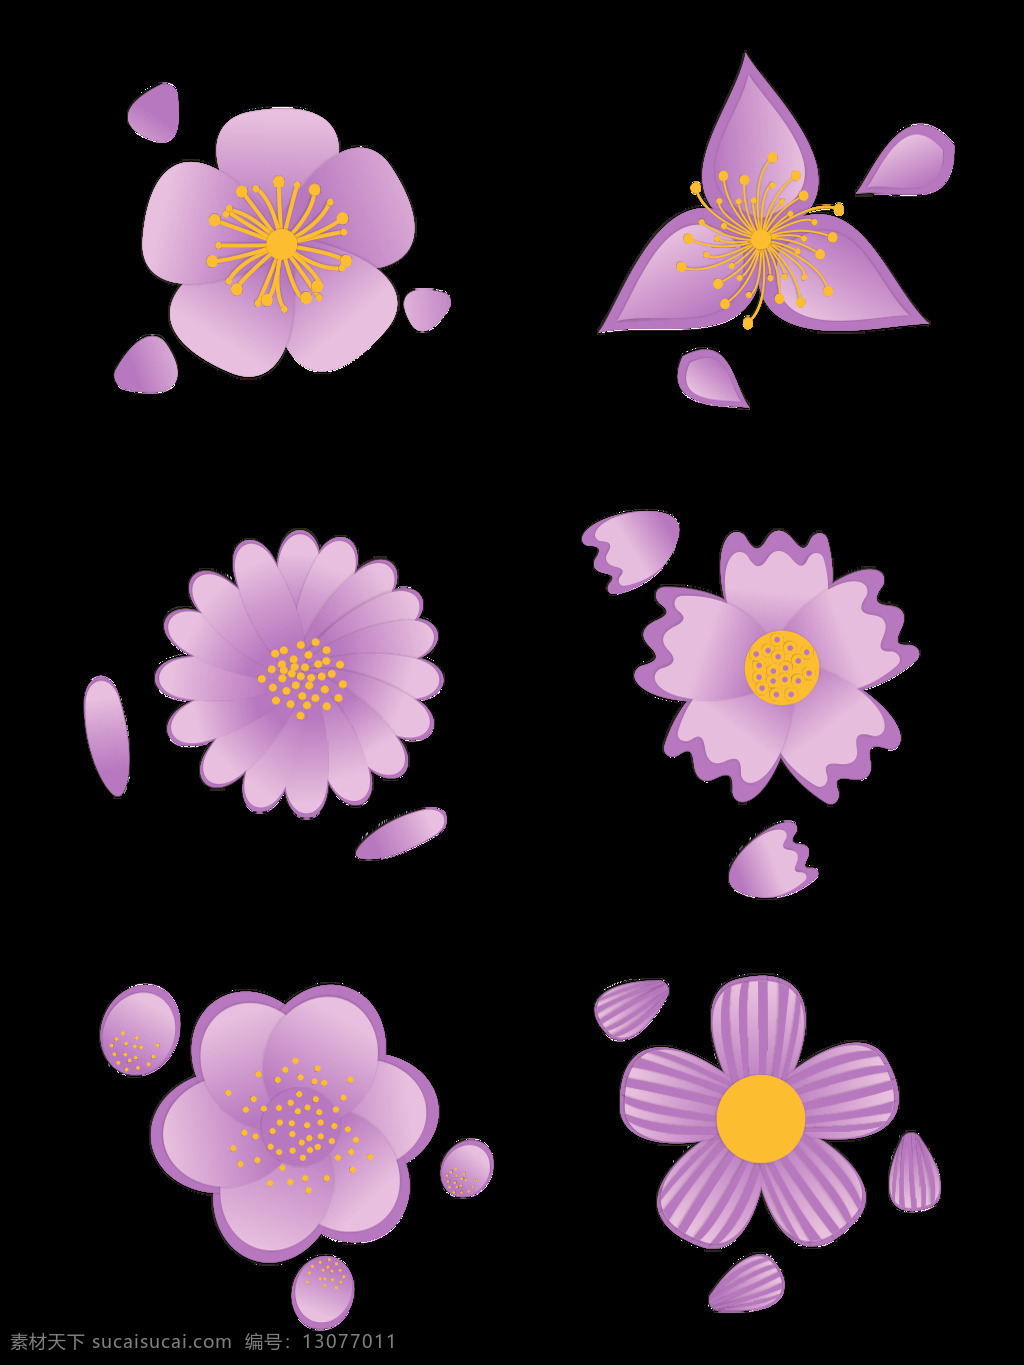 花卉 元素 卡通 小 清新 唯美 浪漫 紫 花瓣 套 图 小清新 紫色 元素设计